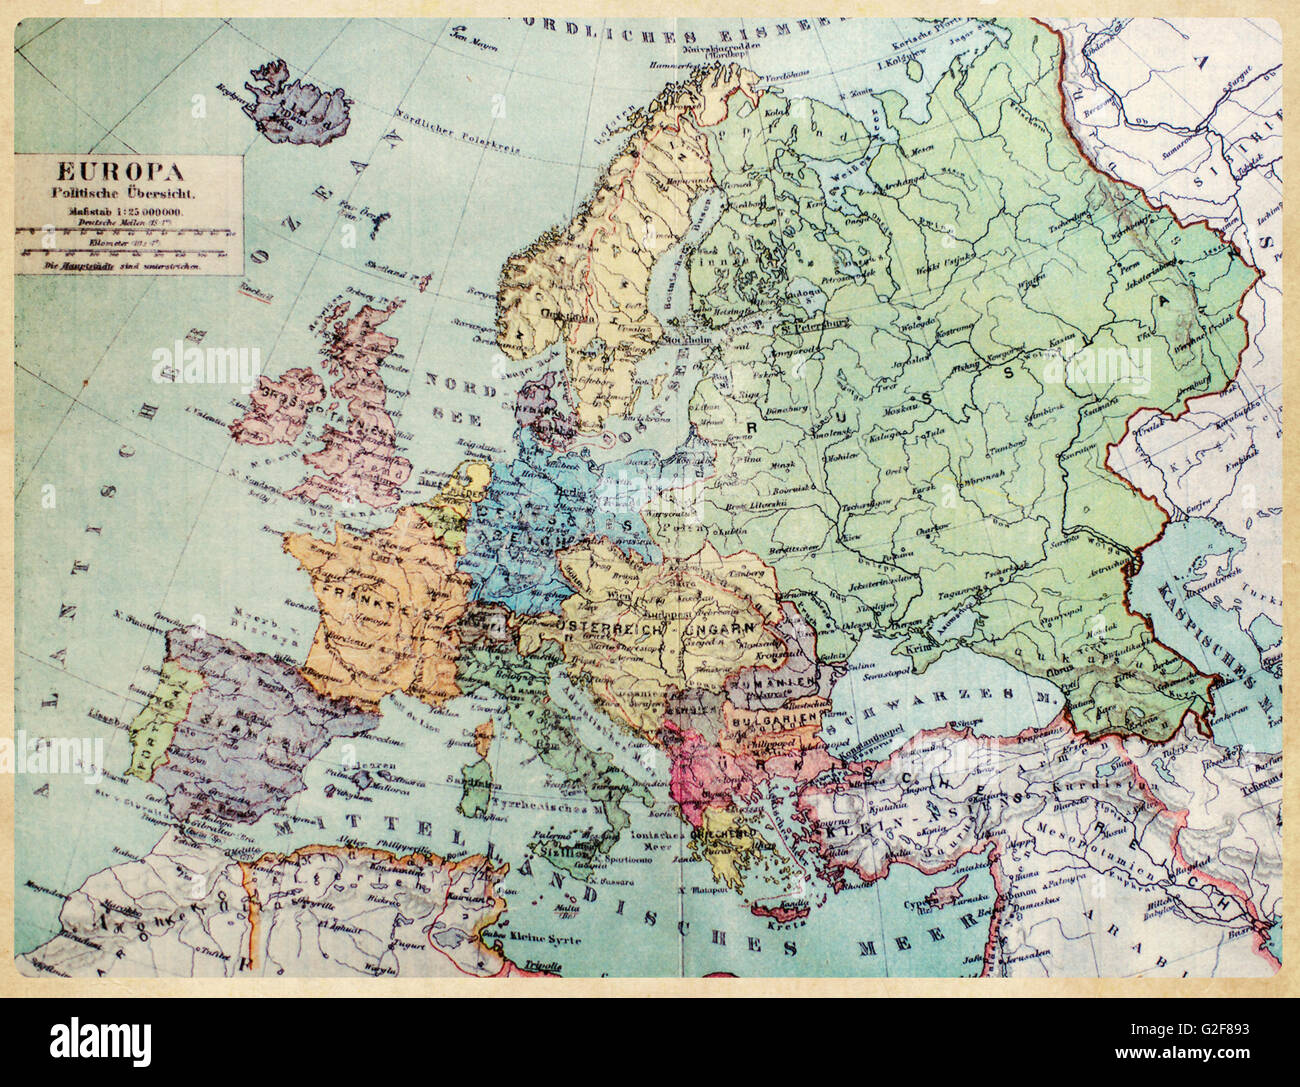 Historische Karte des alten Europa. 1900 Jahre Stockfotografie - Alamy